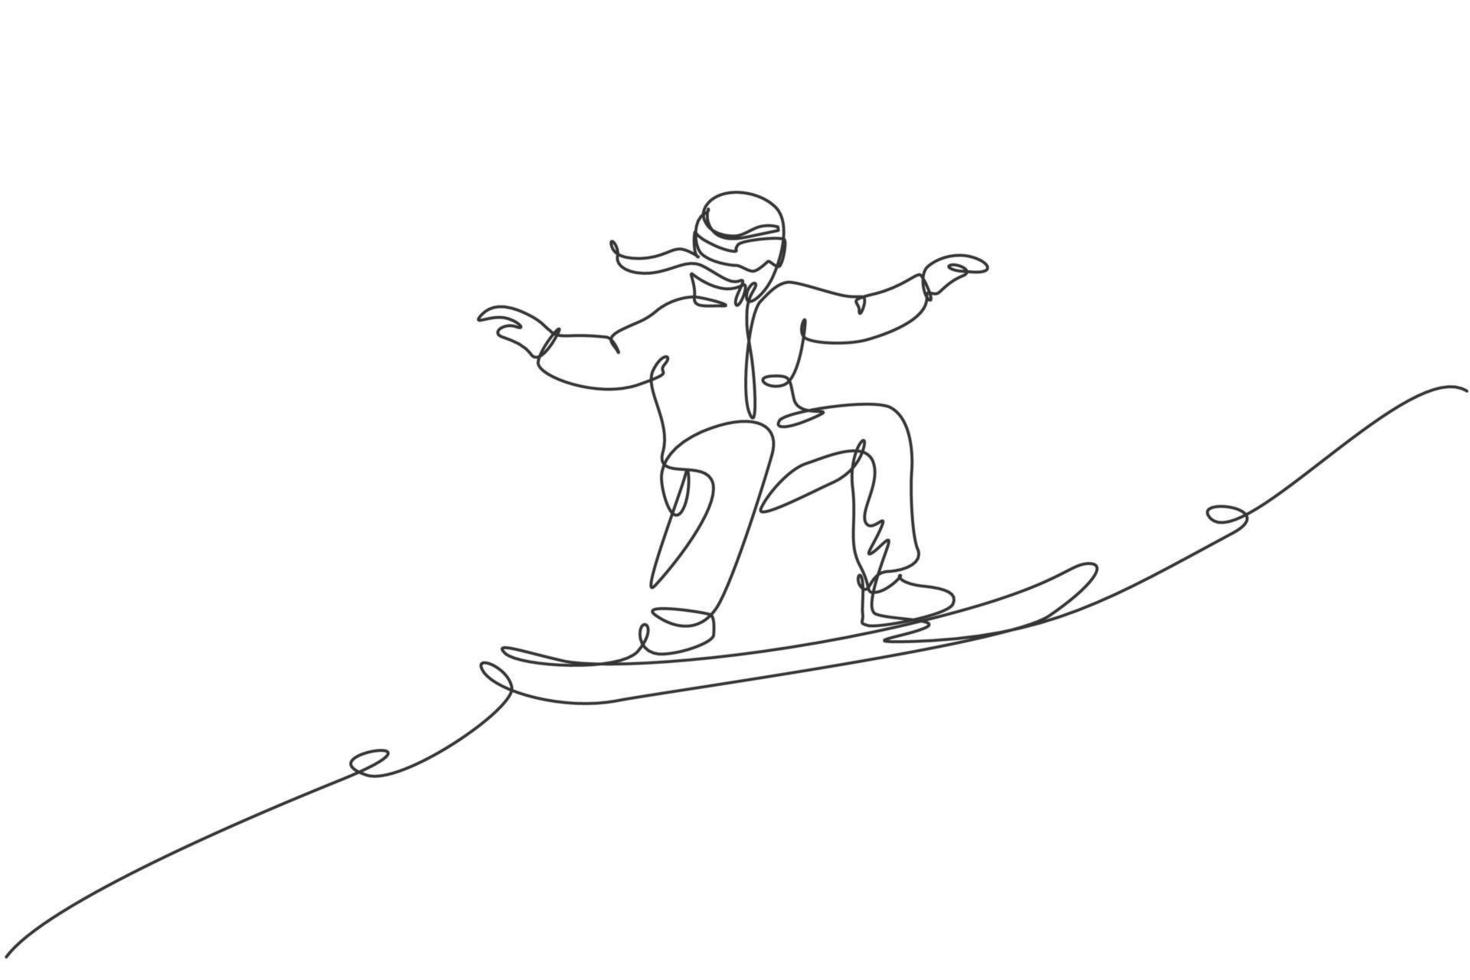 Eine einzige Strichzeichnung einer jungen, energiegeladenen Snowboarderin, die schnelles Snowboard auf der schneebedeckten Bergvektorillustration fährt. touristisches Urlaubs-Lifestyle-Sport-Konzept. modernes Design mit durchgehender Linienführung vektor